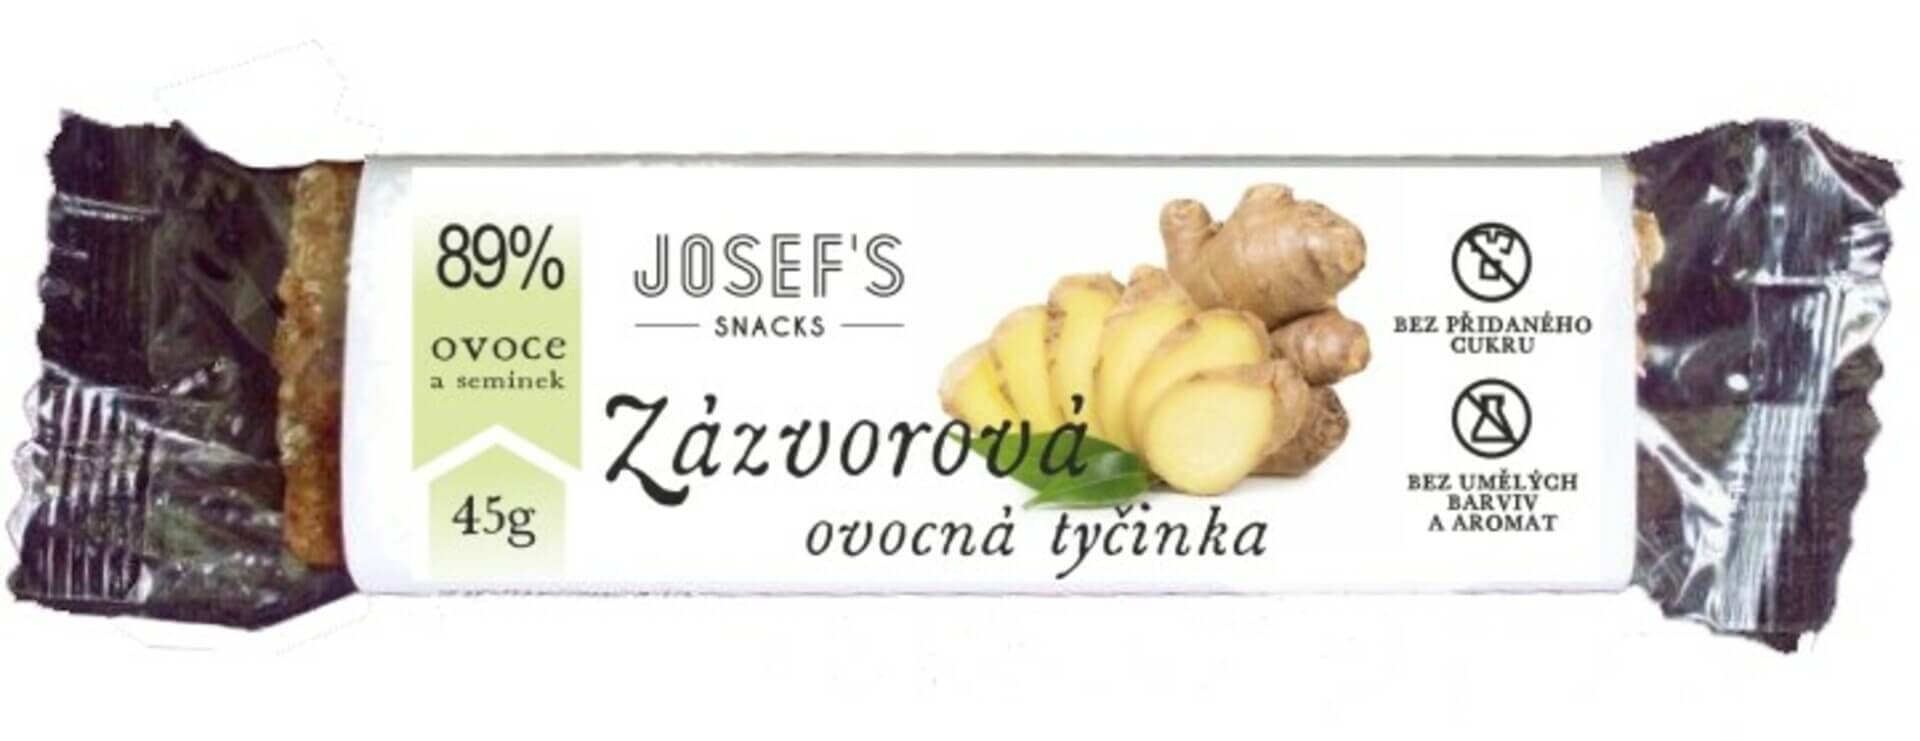 Josef's snacks Ovocná zázvorová tyčinka 45 g